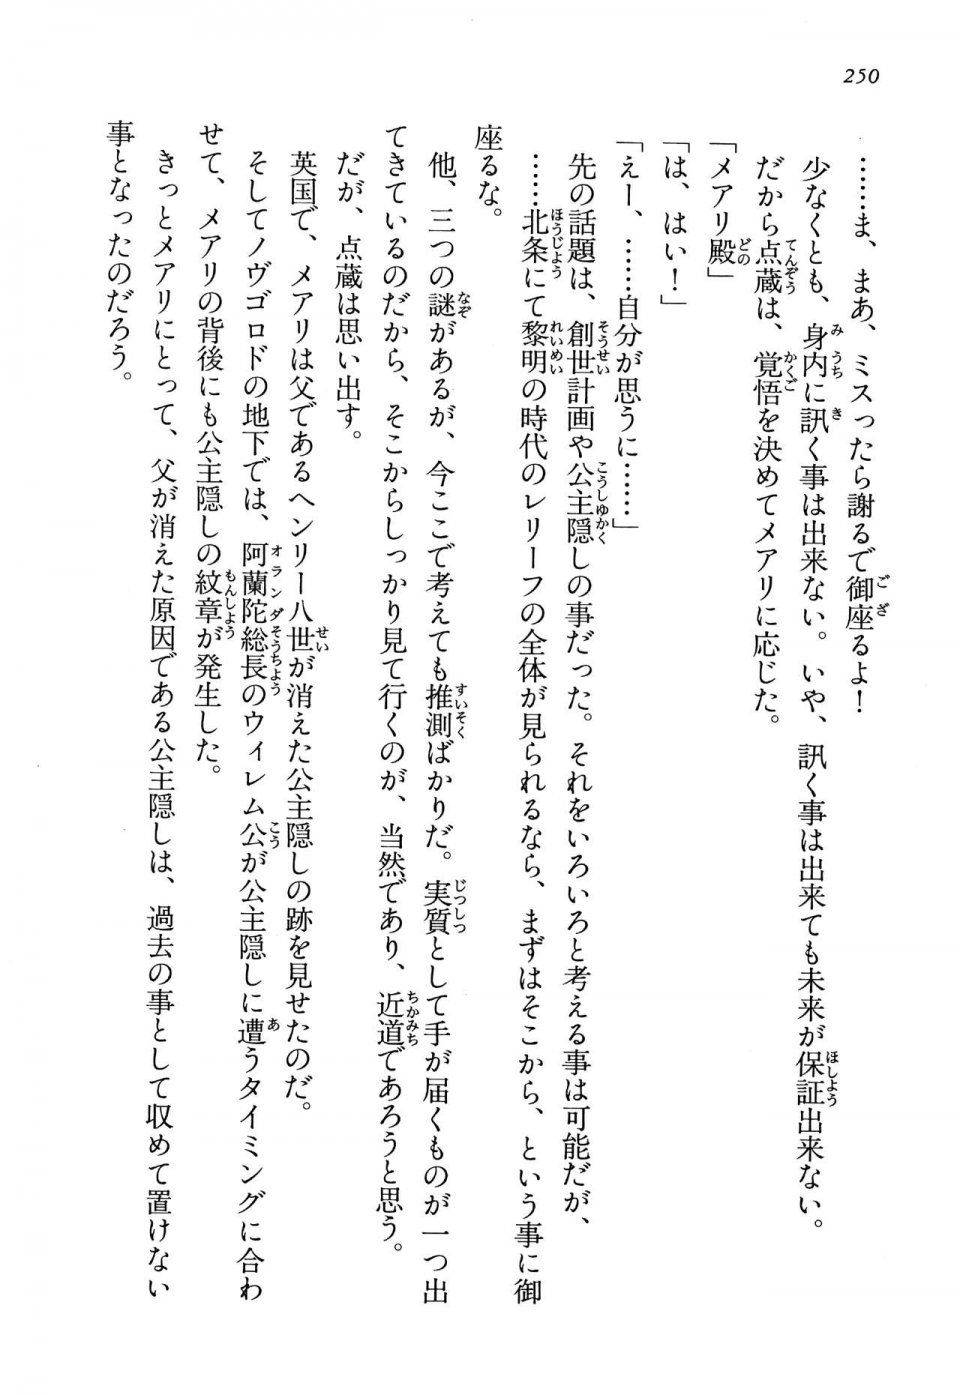 Kyoukai Senjou no Horizon LN Vol 13(6A) - Photo #250